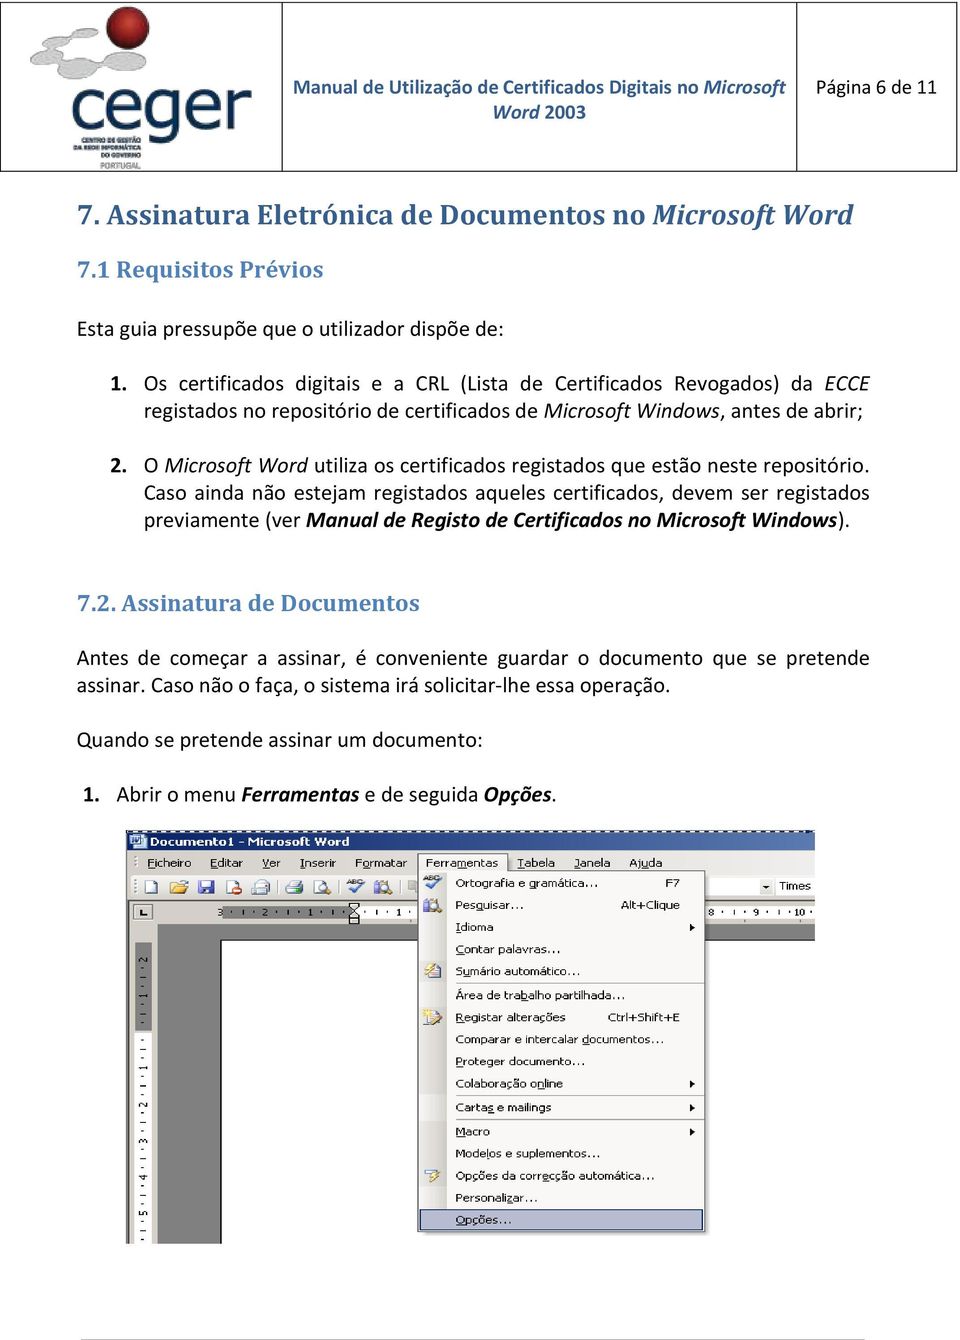 O Microsoft Word utiliza os certificados registados que estão neste repositório.